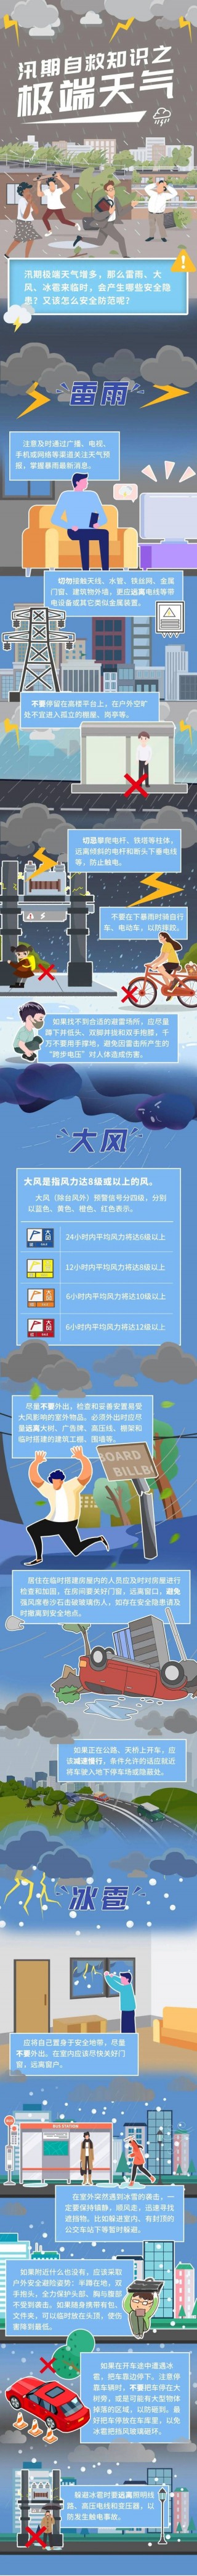 怎么可以错过（7777788888管家婆澳）陕西发布灾害性天气预警 极端天气应当这样做好防范